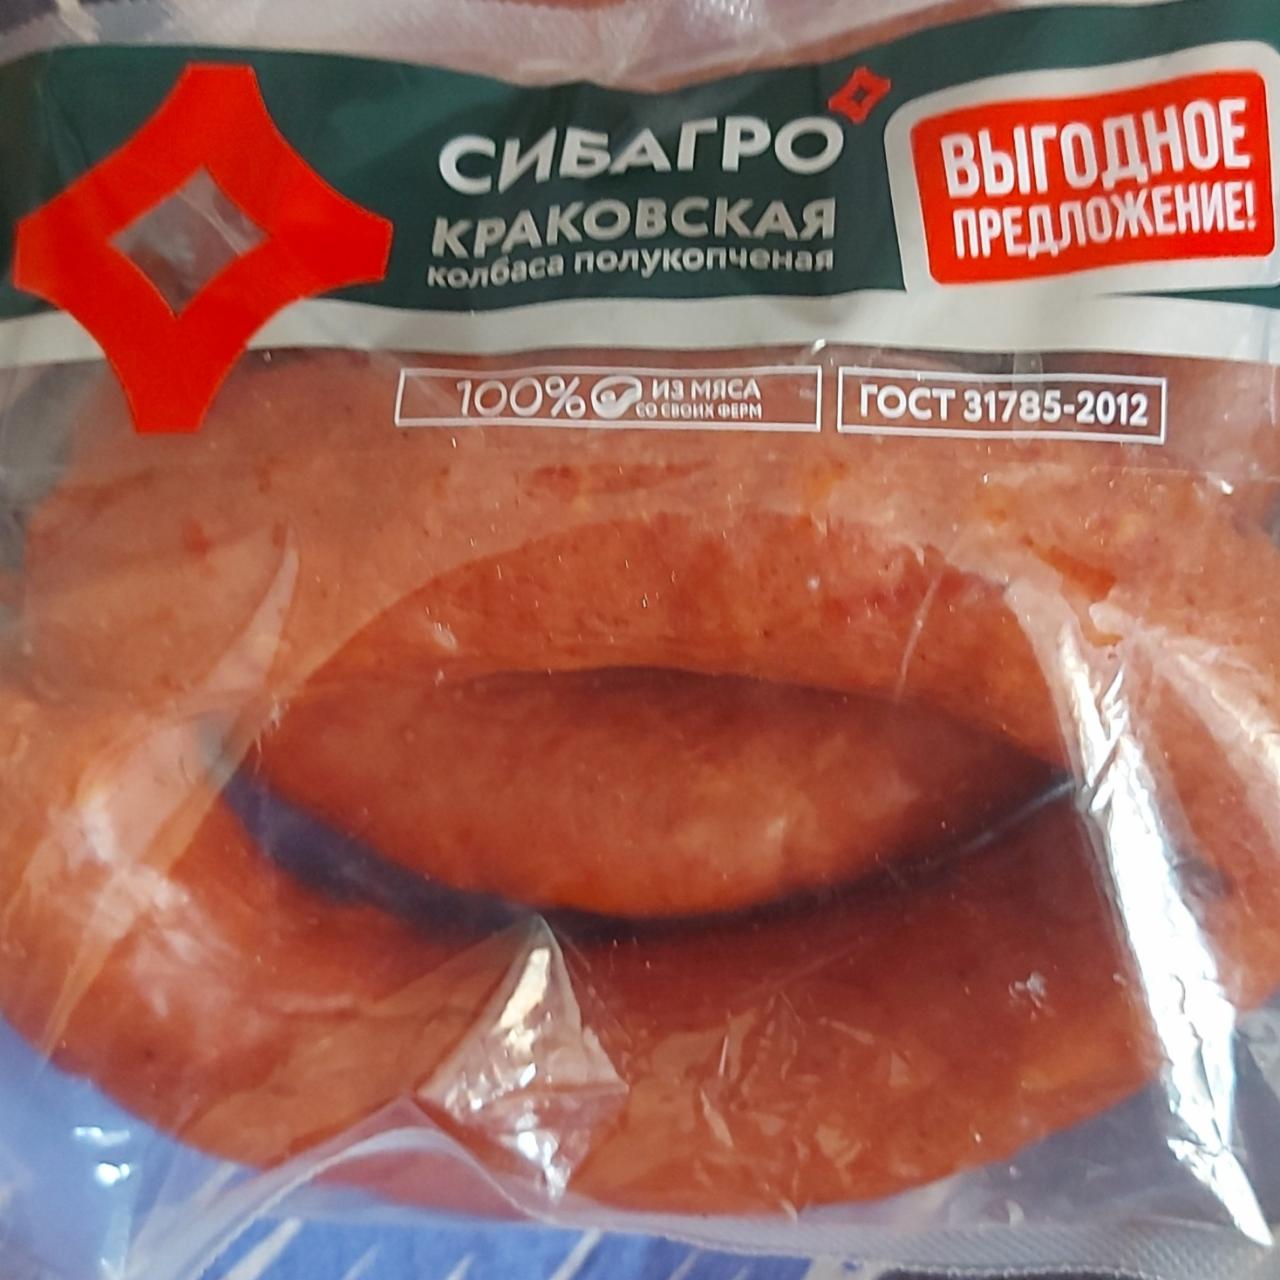 Фото - Краковская колбаса полукопченая Сибагро